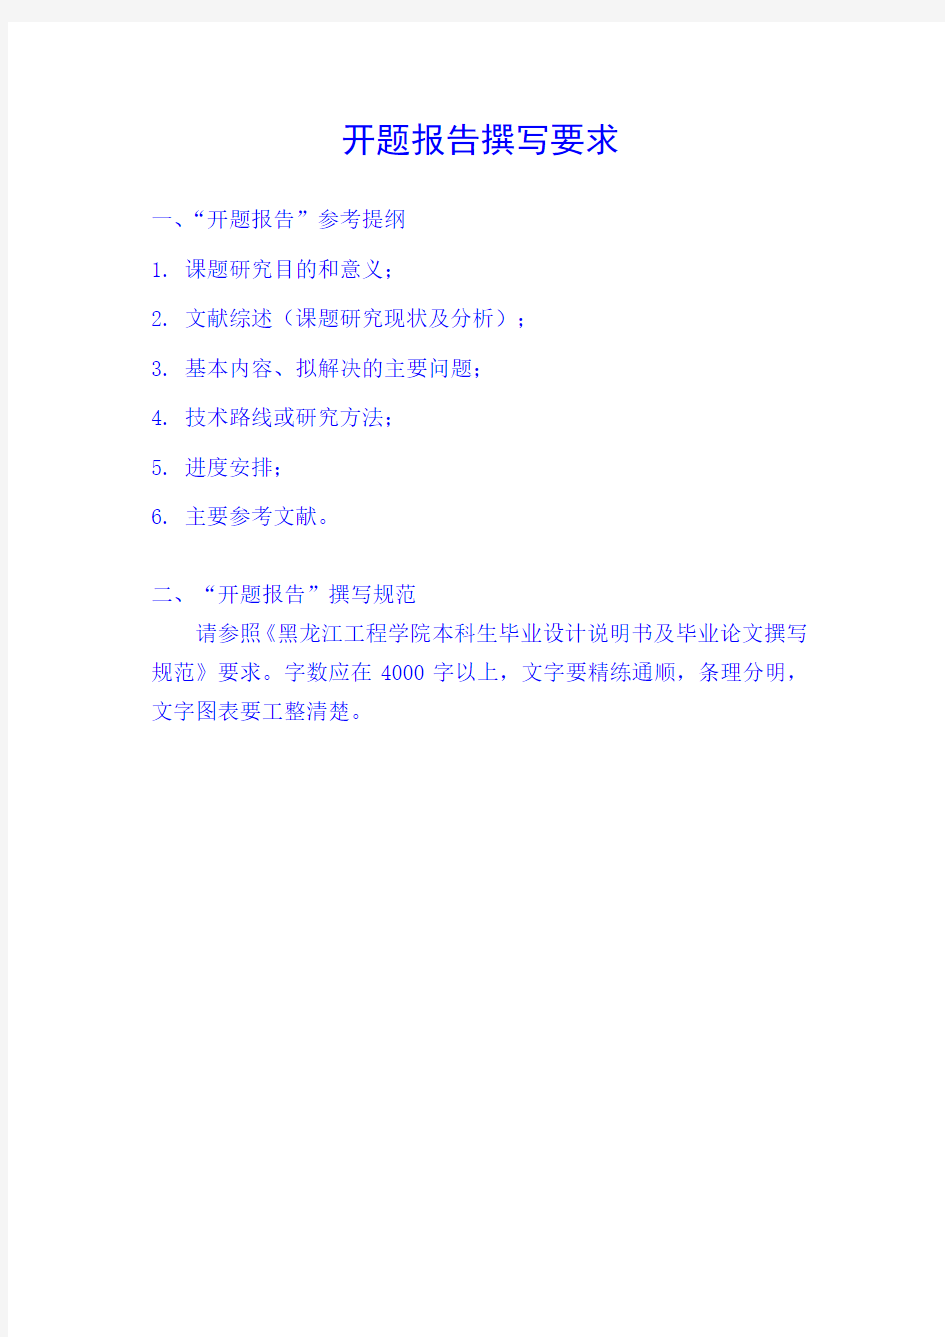 新黑龙江工程学院毕业设计(论文)开题报告